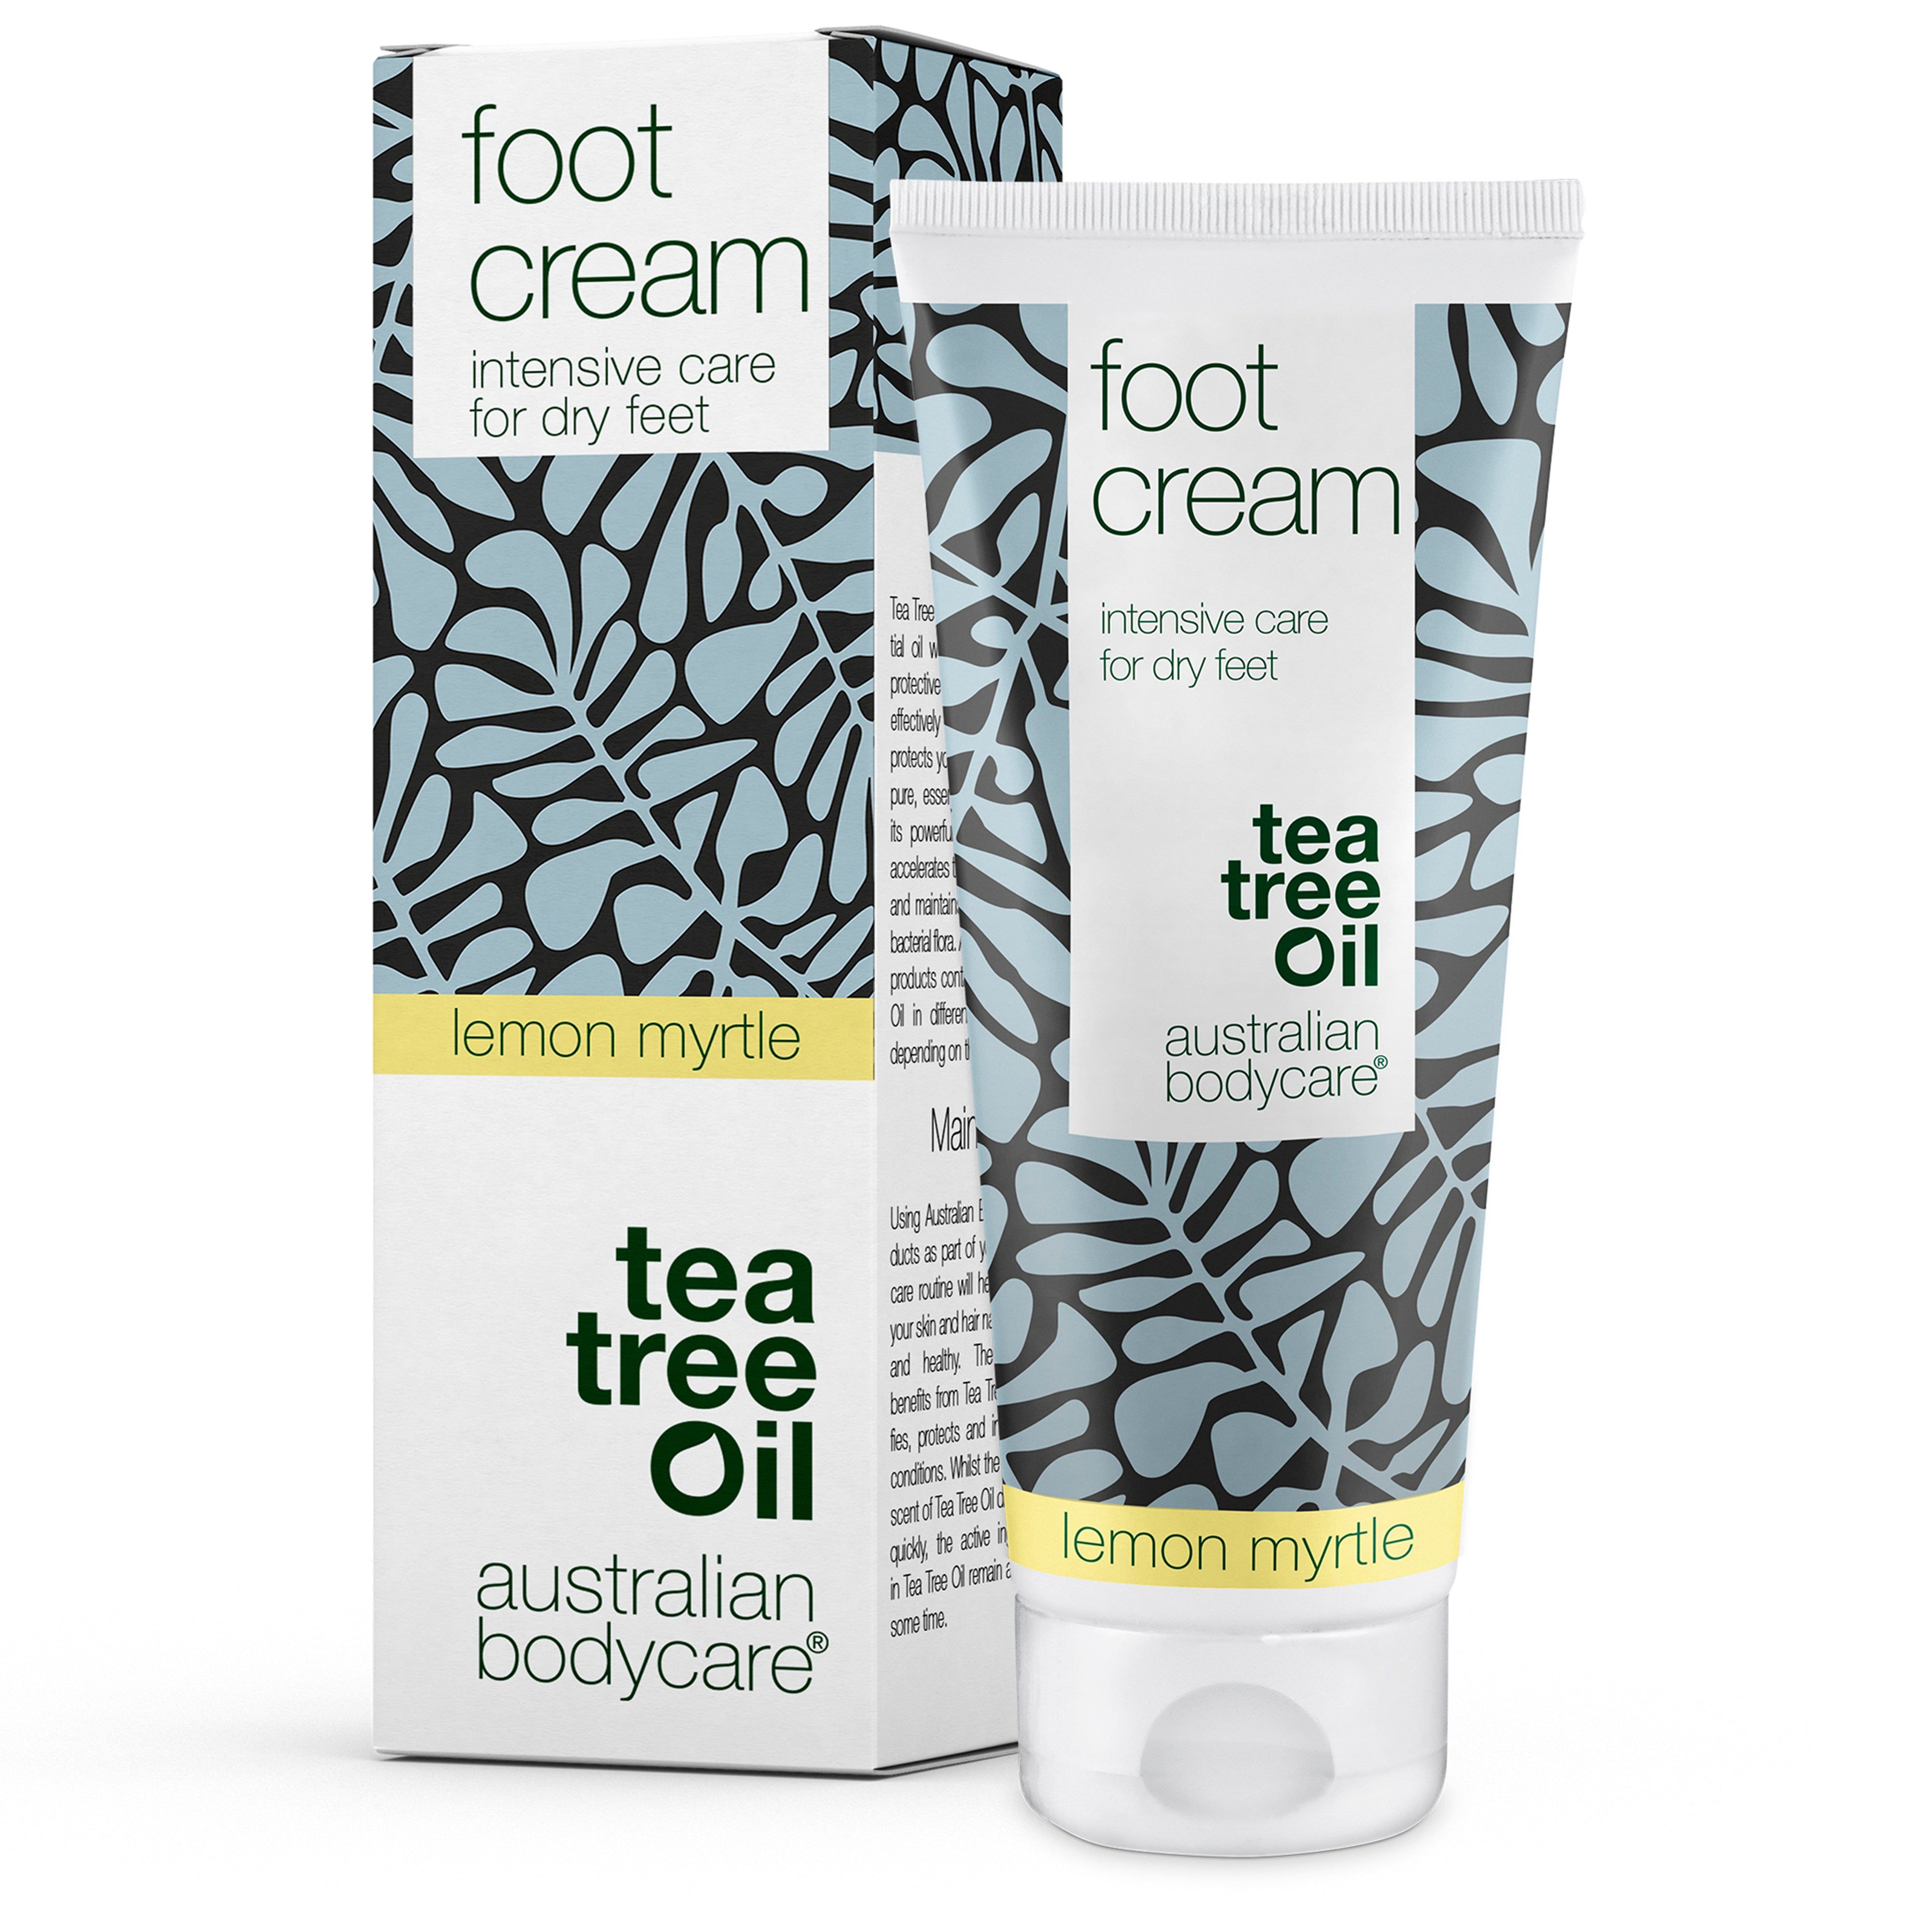 Australian Bodycare Teebaumöl und lemon myrtle Fußcreme mit 10 % Urea